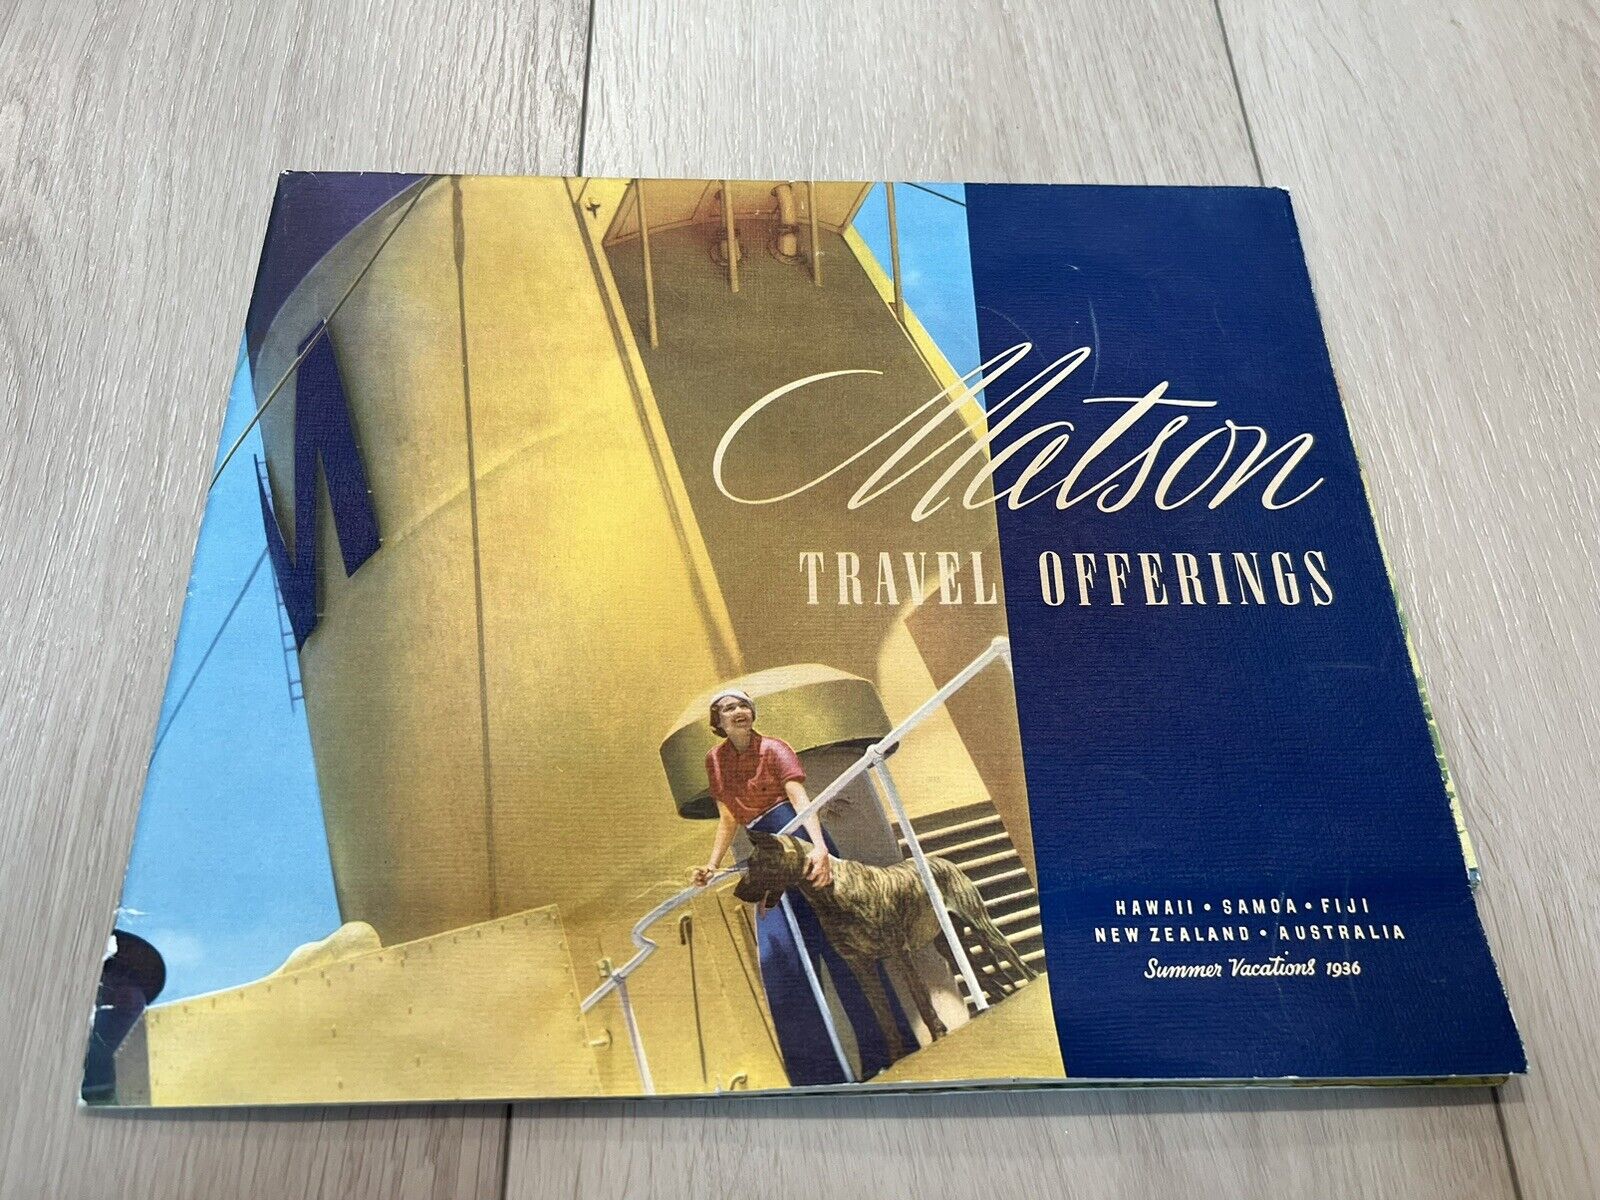 Matson Travel Offerings 1936